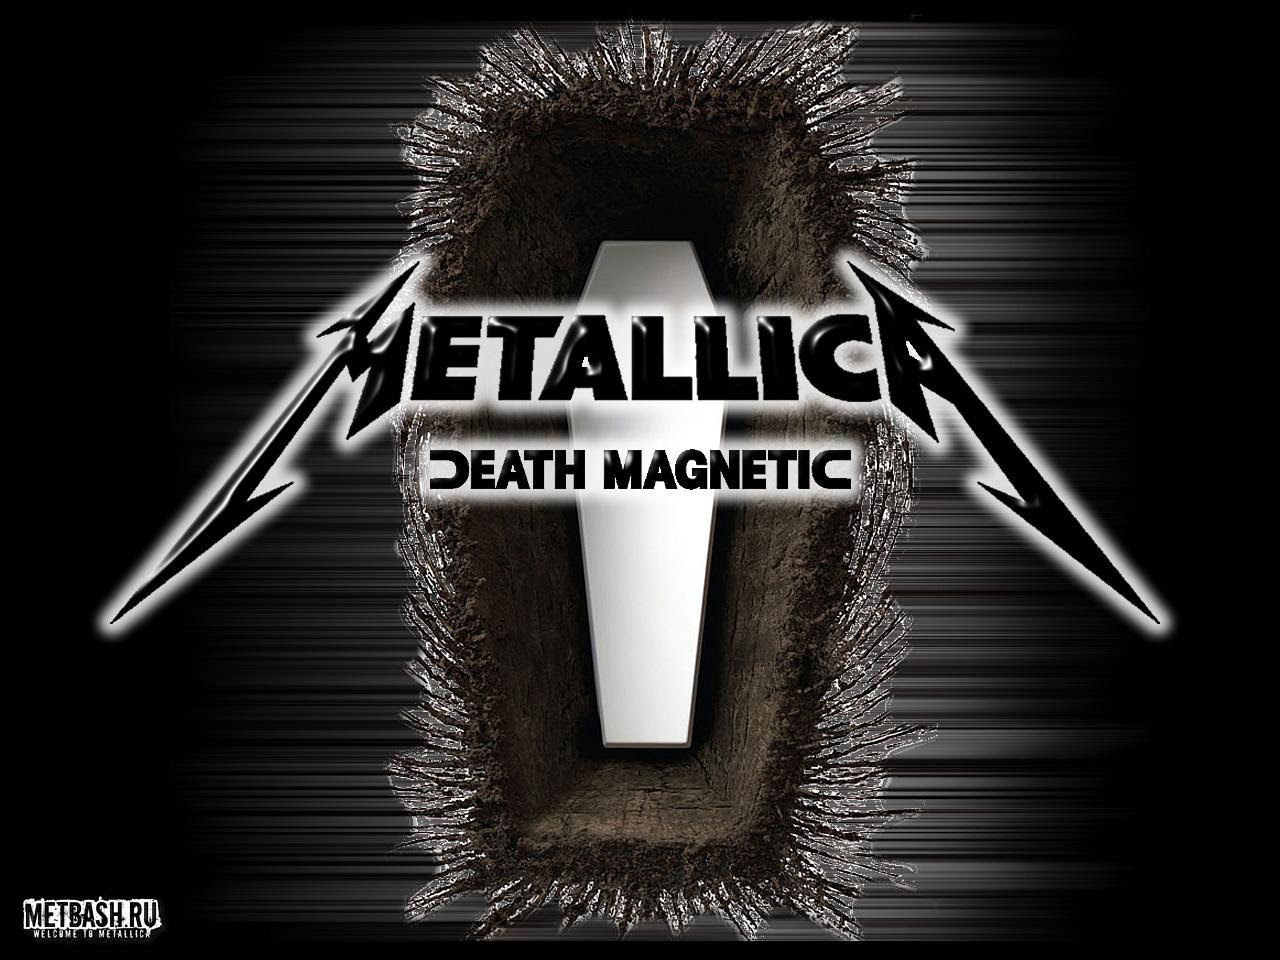 Chanteurs, musique metallica à télécharger afin de donner des couleurs à votre pc. Metallica Death Magnetic Fond D Ecran For Desktop Metallica Fond D Ecran 39913968 Fanpop